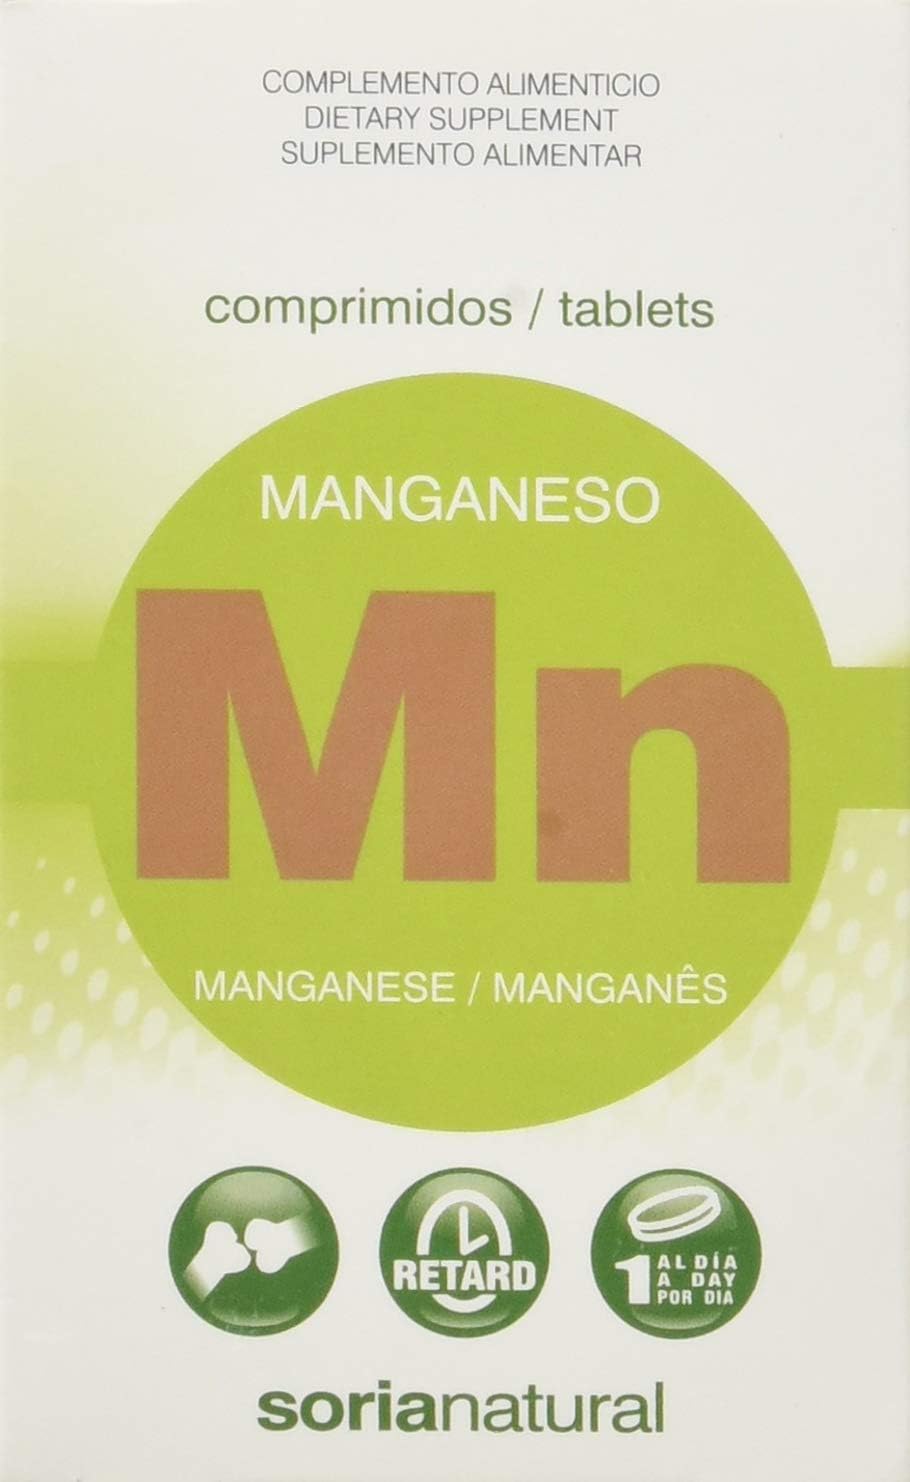 Soria Natural Manganeso Retard Tablets